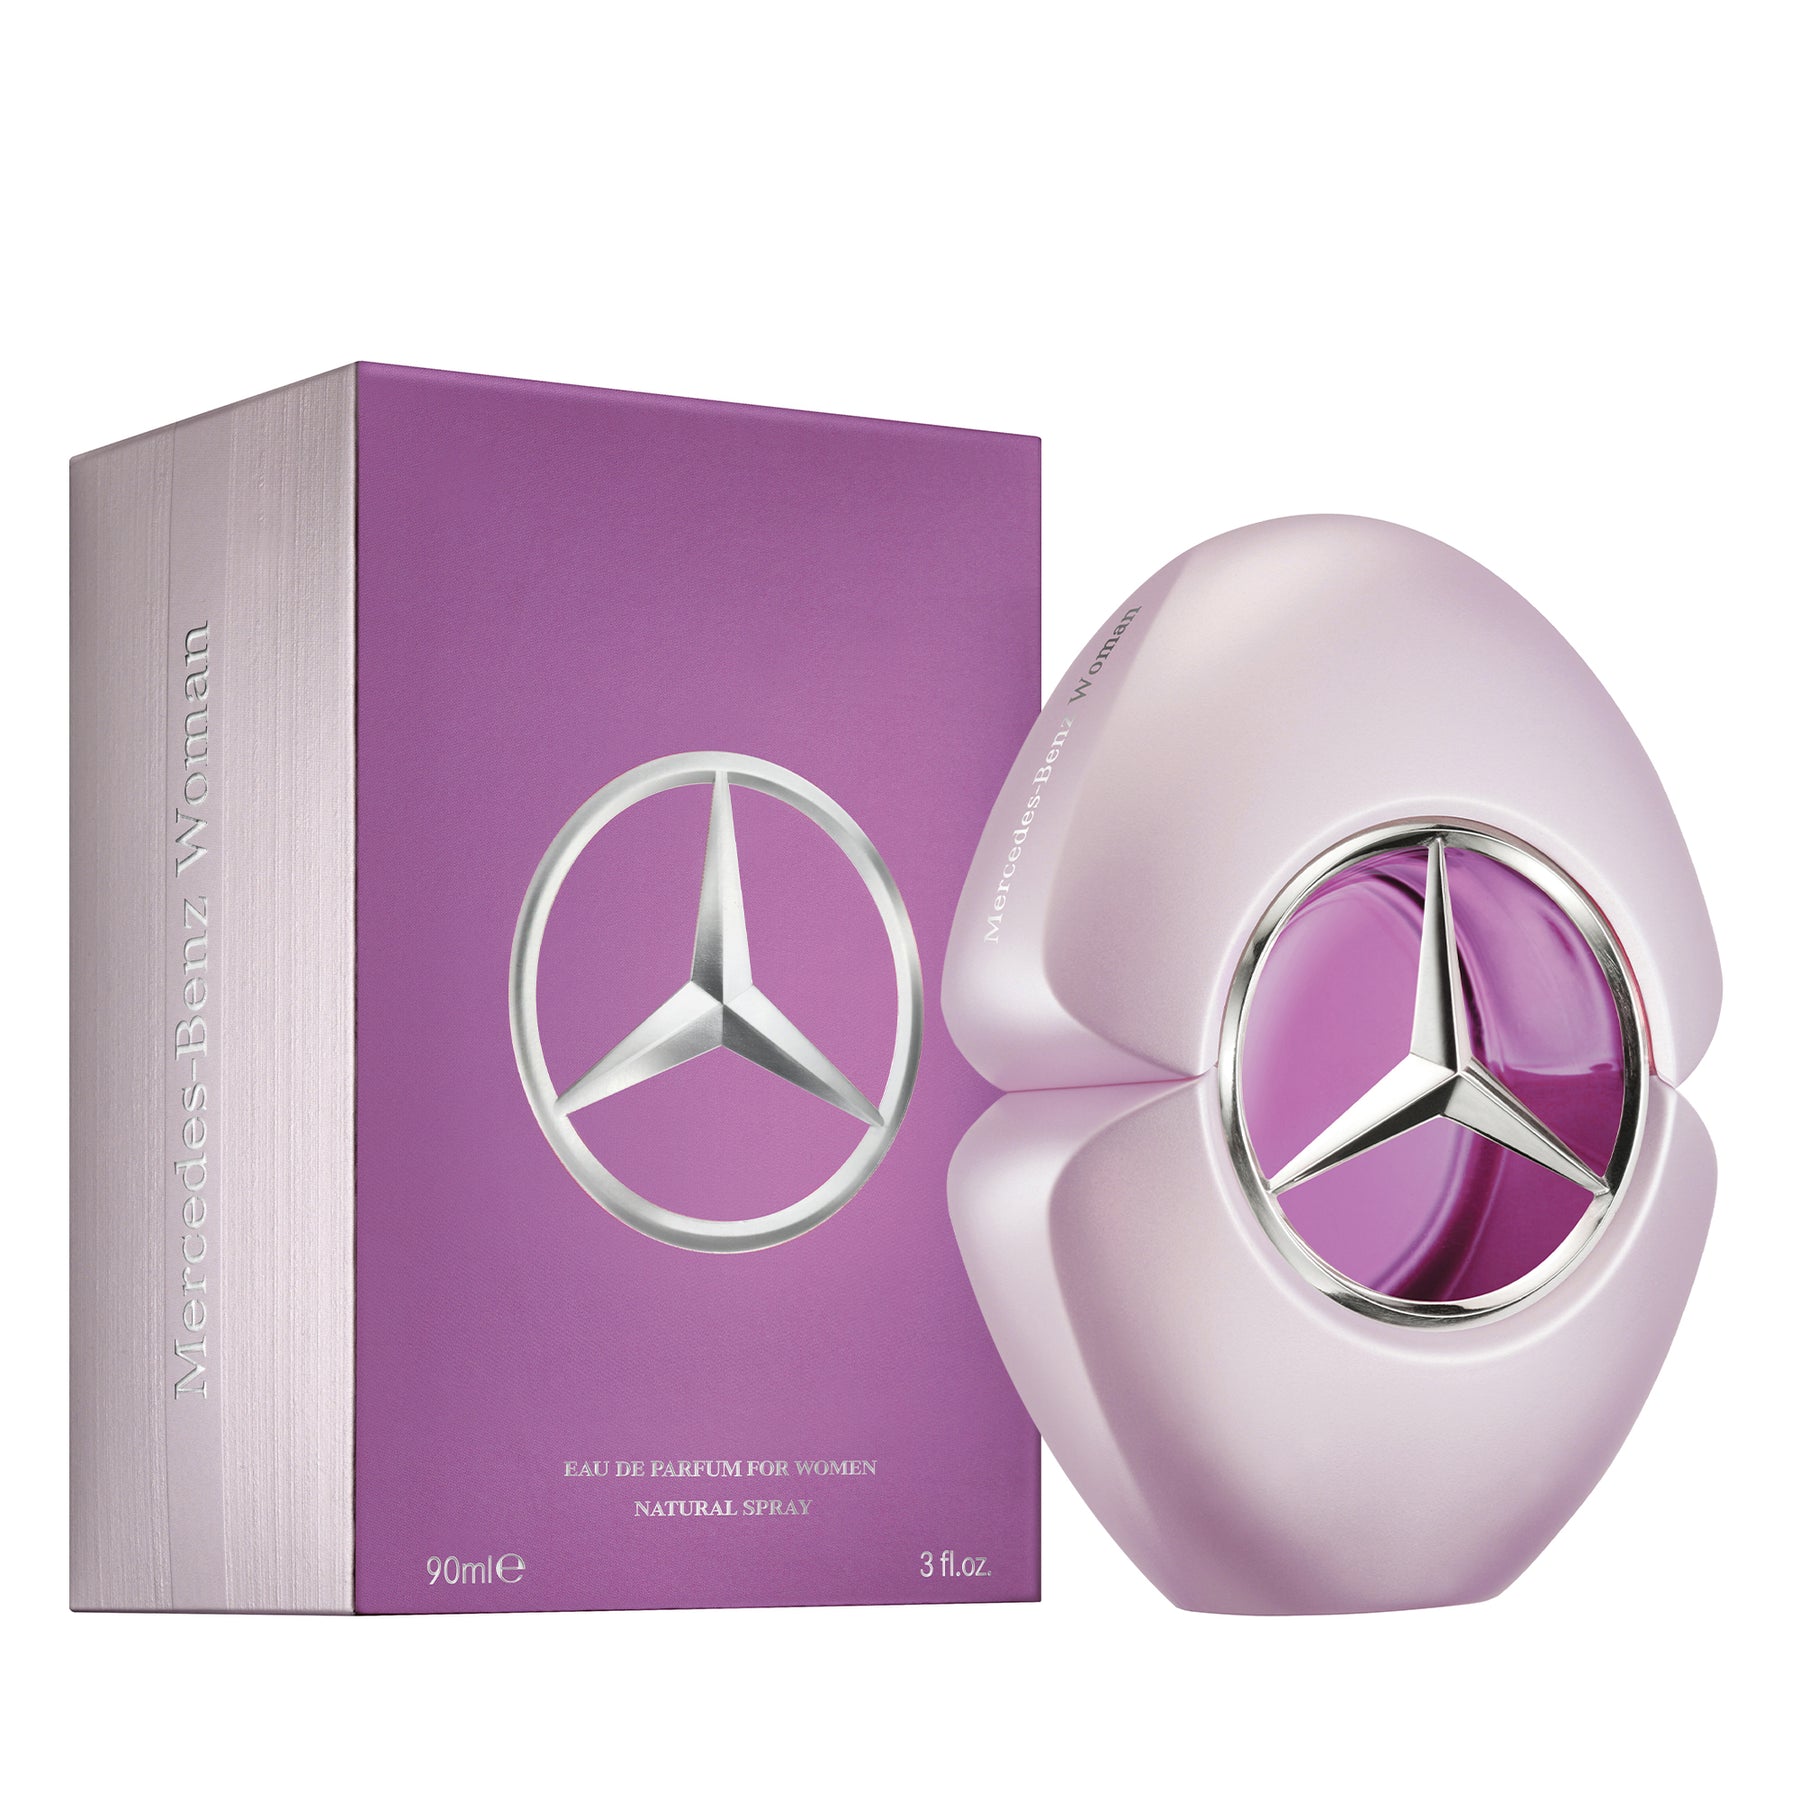 Mercedes-Benz Woman EDP 90ml – Ab Presents